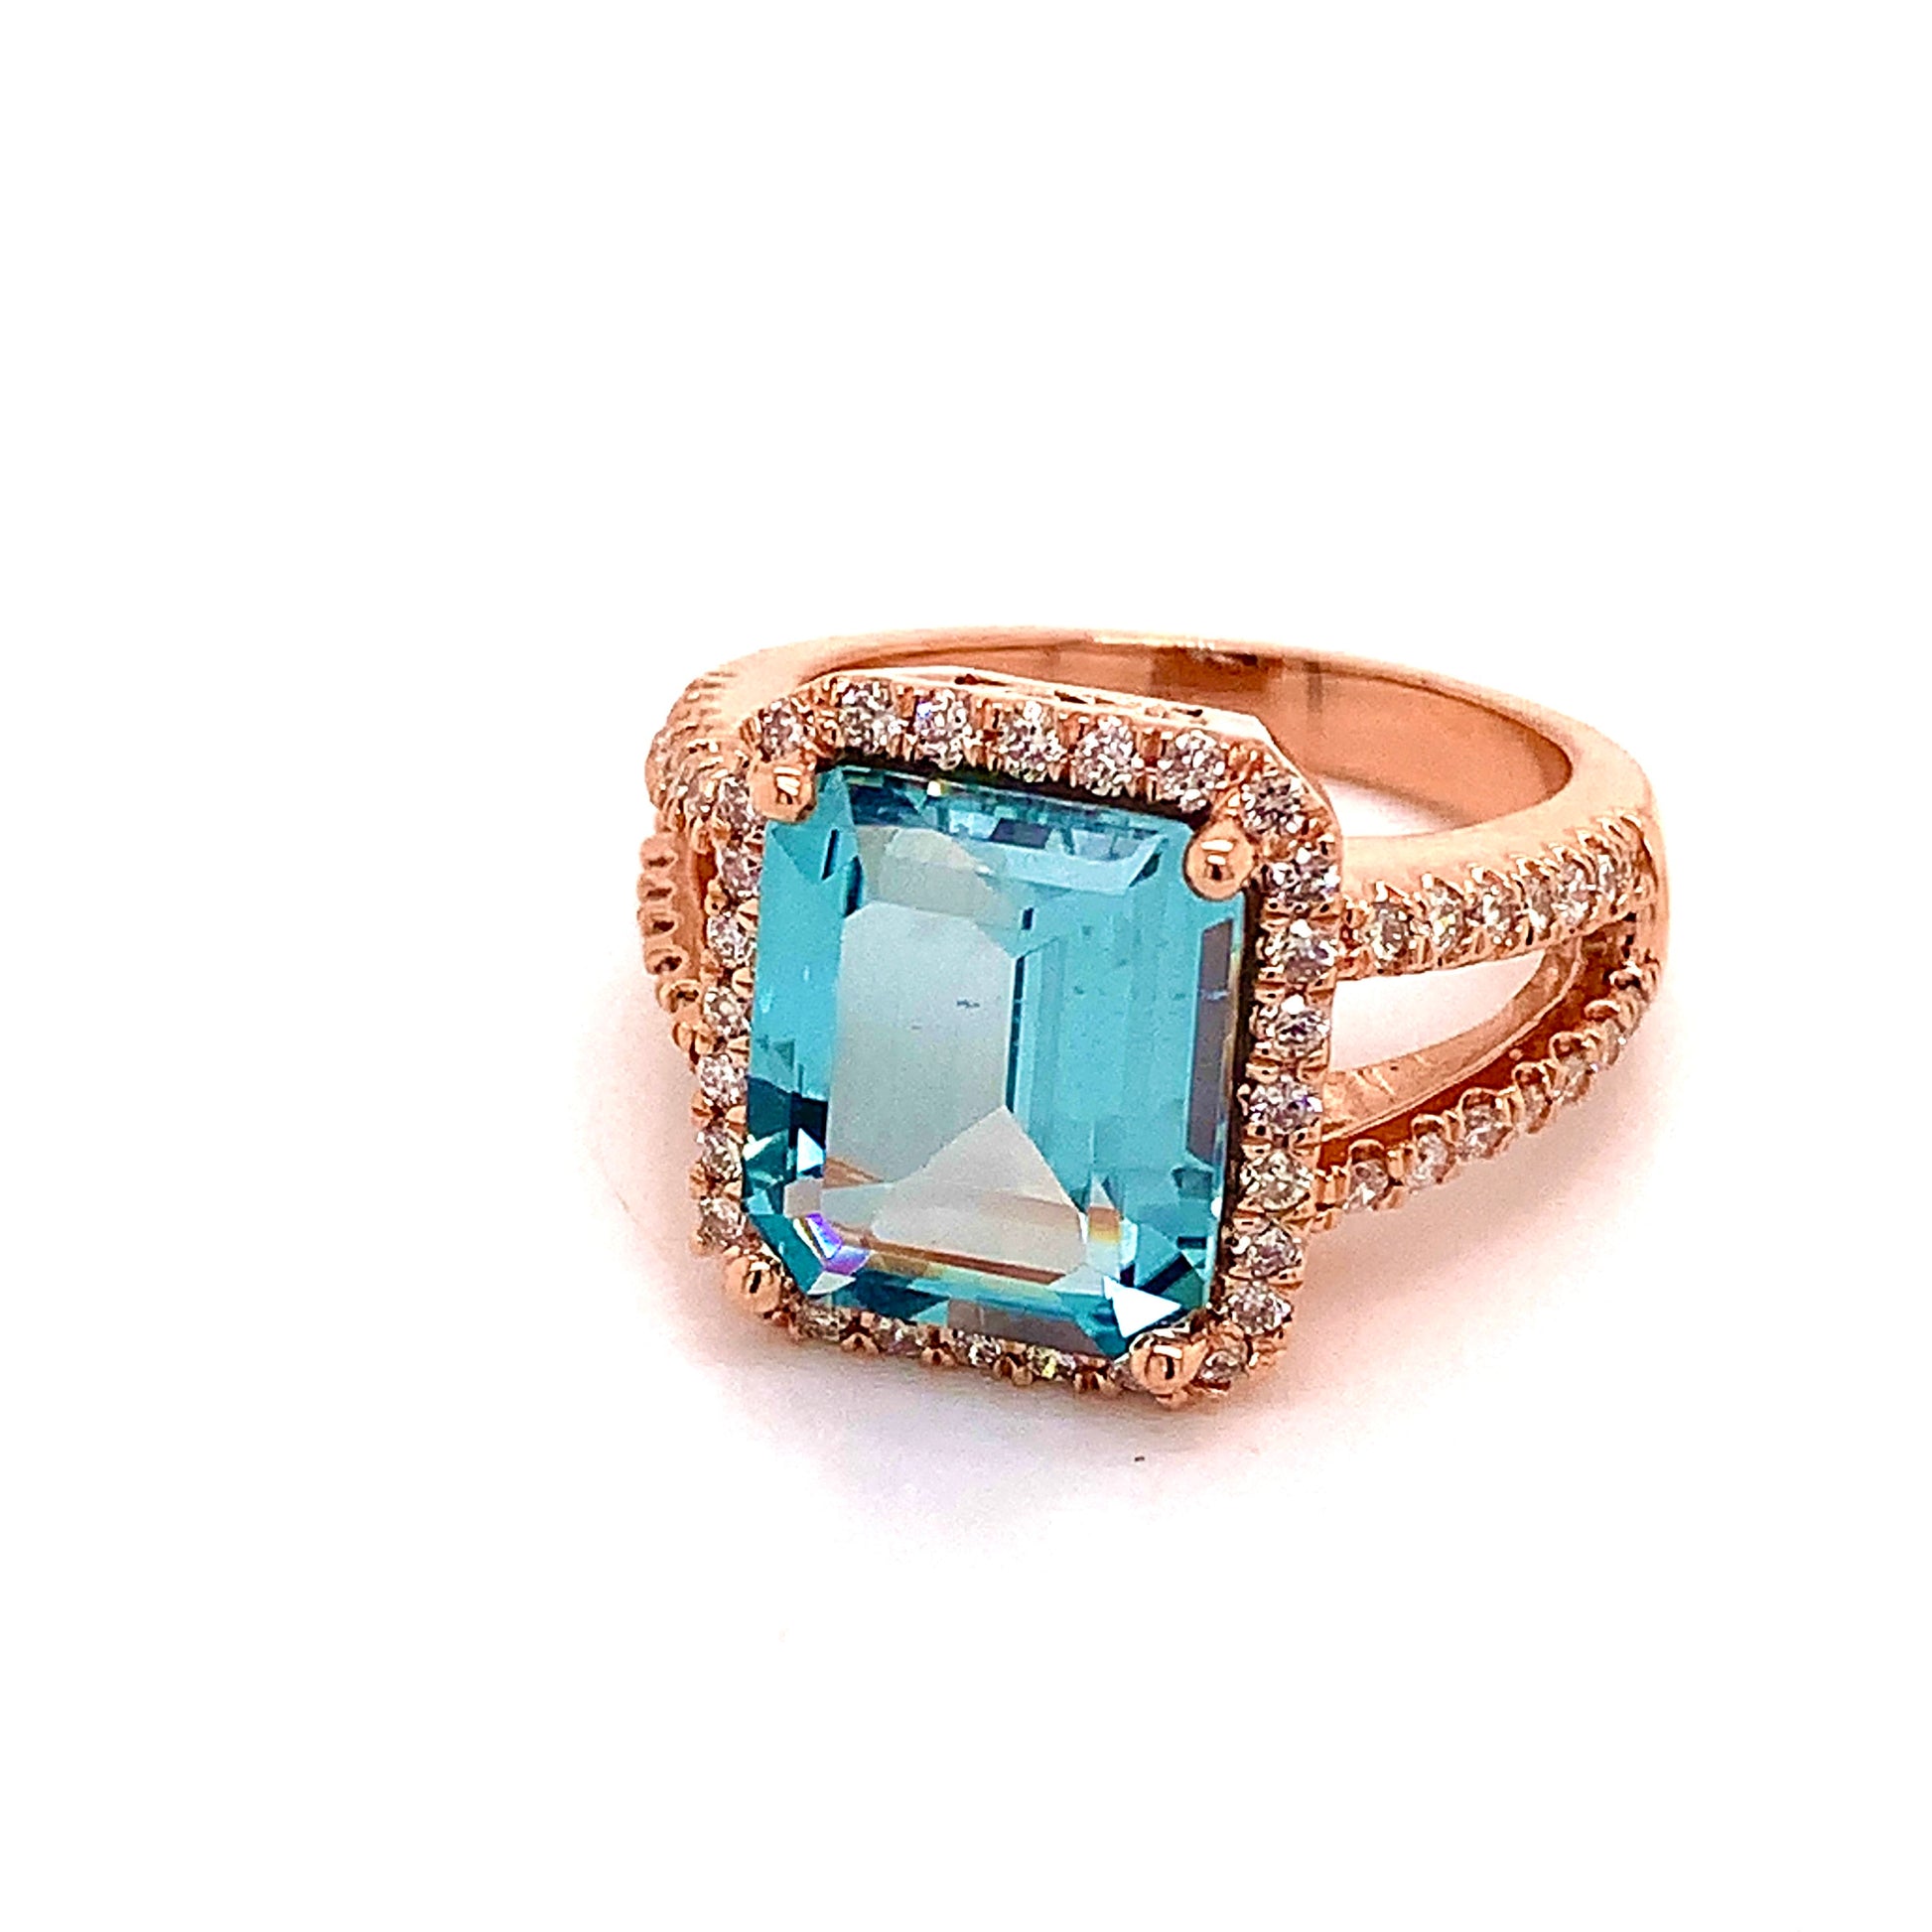 Diamond Aquamarine Ring Size 6.5 14k Gold 6.25 TCW Certified $6,950 120672 - Certified Fine Jewelry